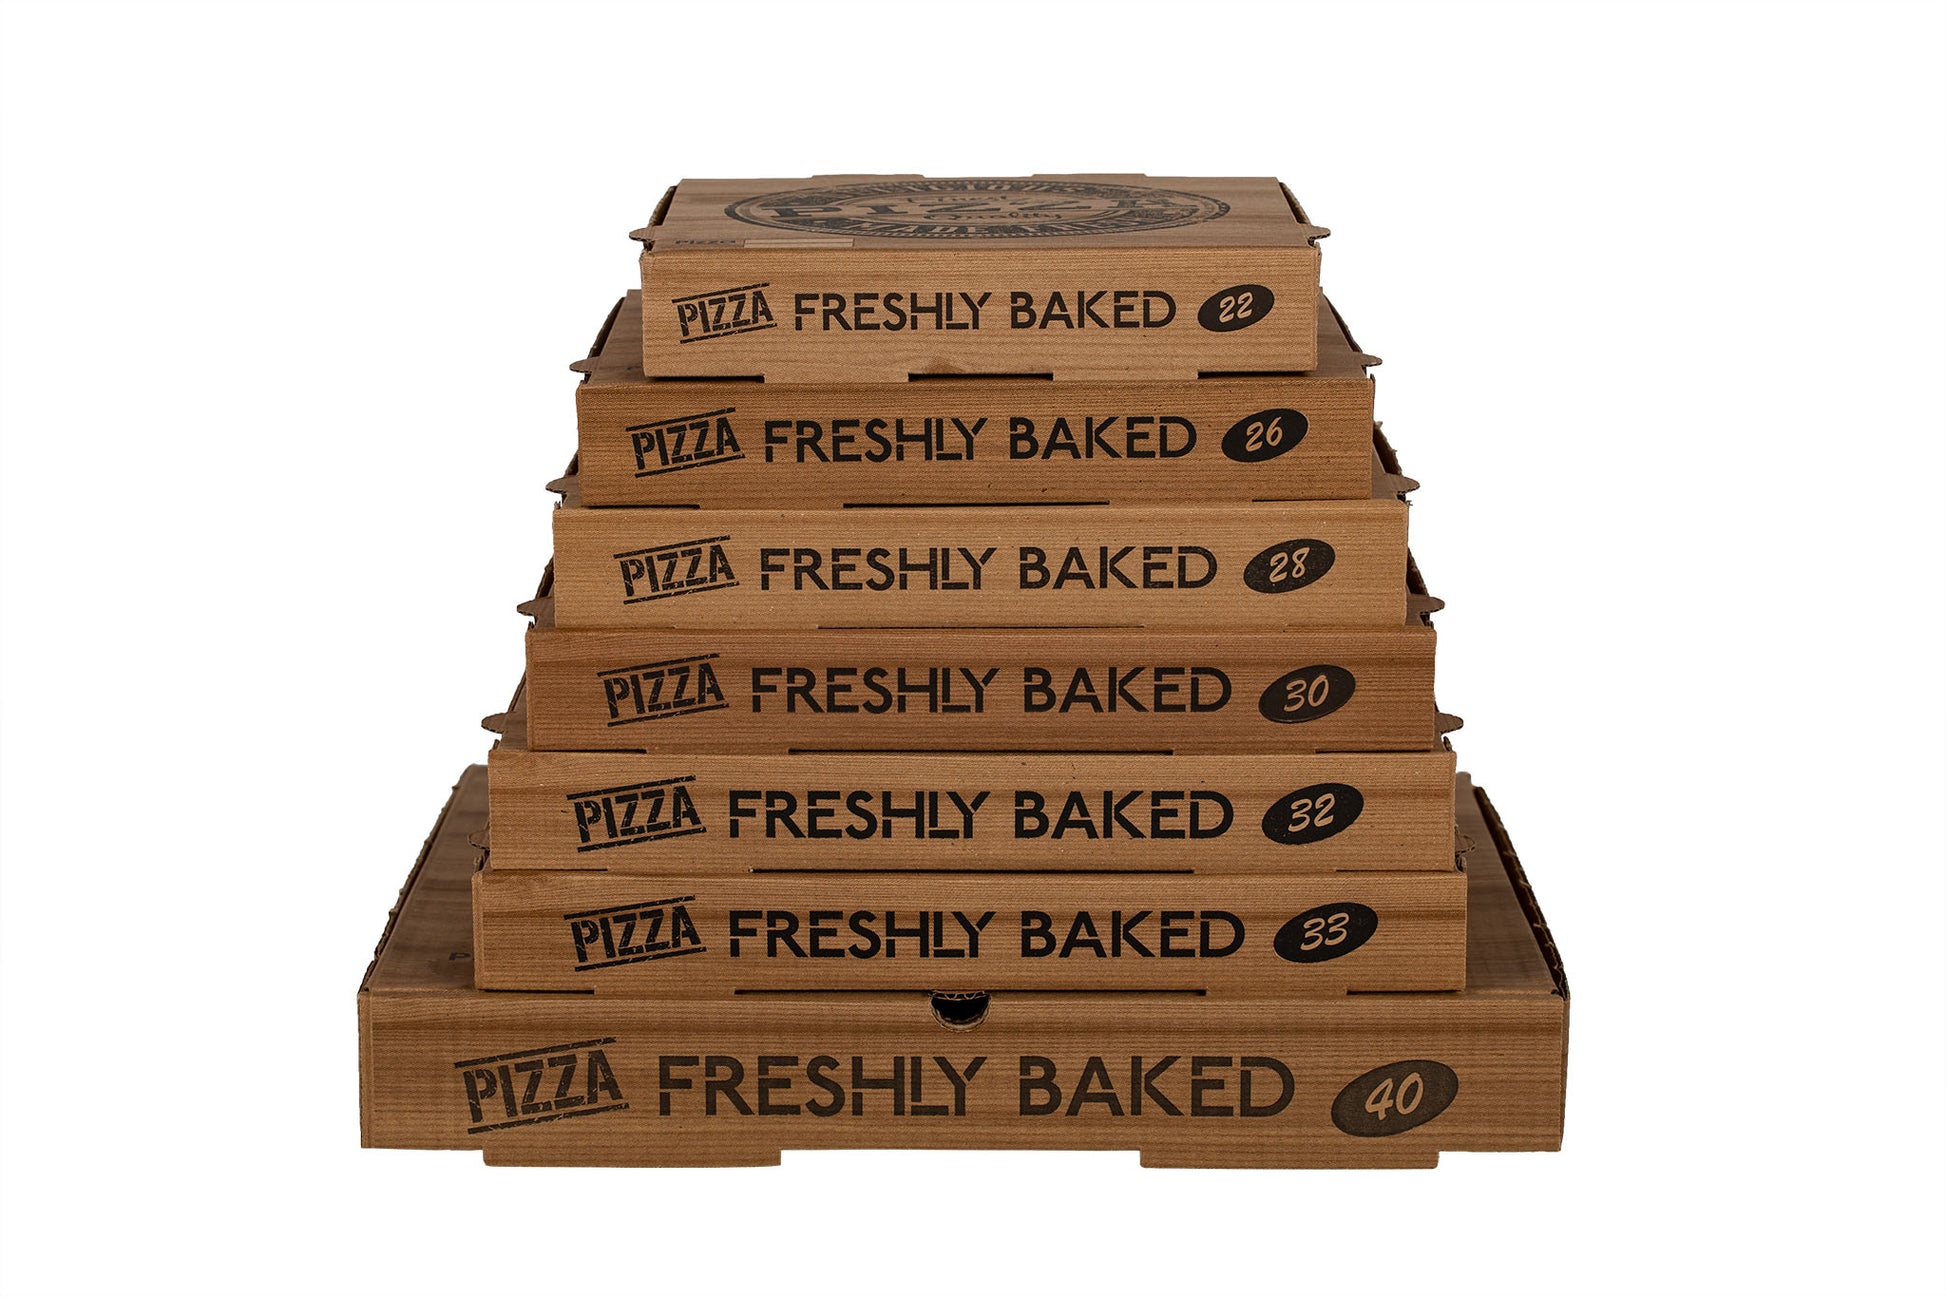 Auf dem Bild ist ein Stapel brauner Pizzakartons in der Größe 22 bis 40 von vorne zu sehen. Aufgedruckt ist ein Logo welches einem Stempelabdruck ähnelt mit dem Text: "Finest Pizza Quality, Delicious Made Fresh". Vertrieben durch die Malik Verpackungen GmbH Hanau